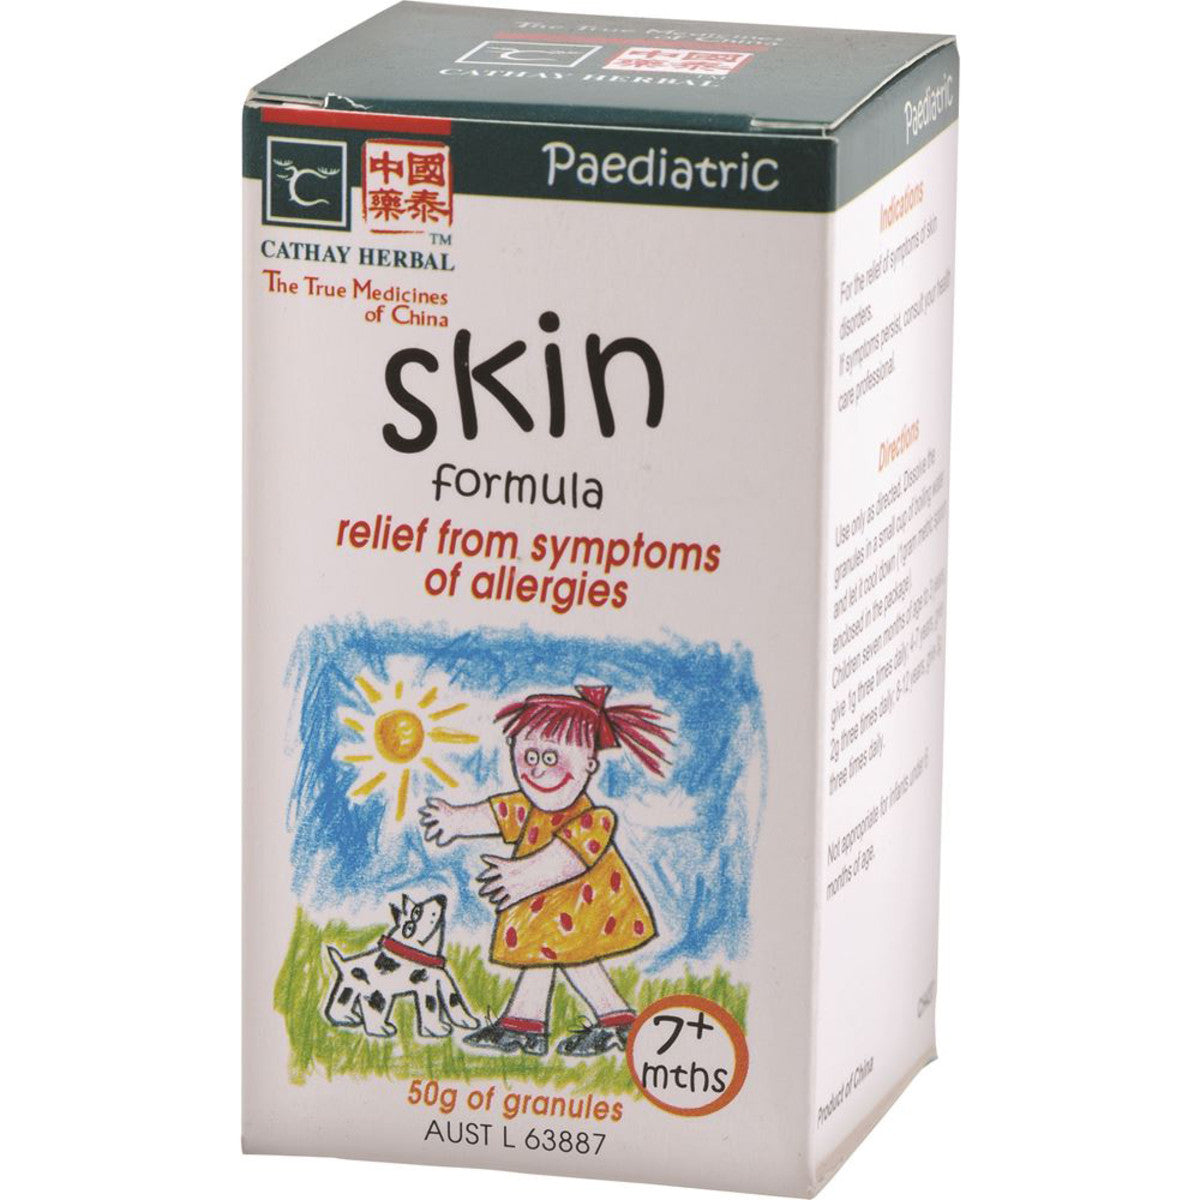 Cathay Herbal - Paediatric Skin Formula